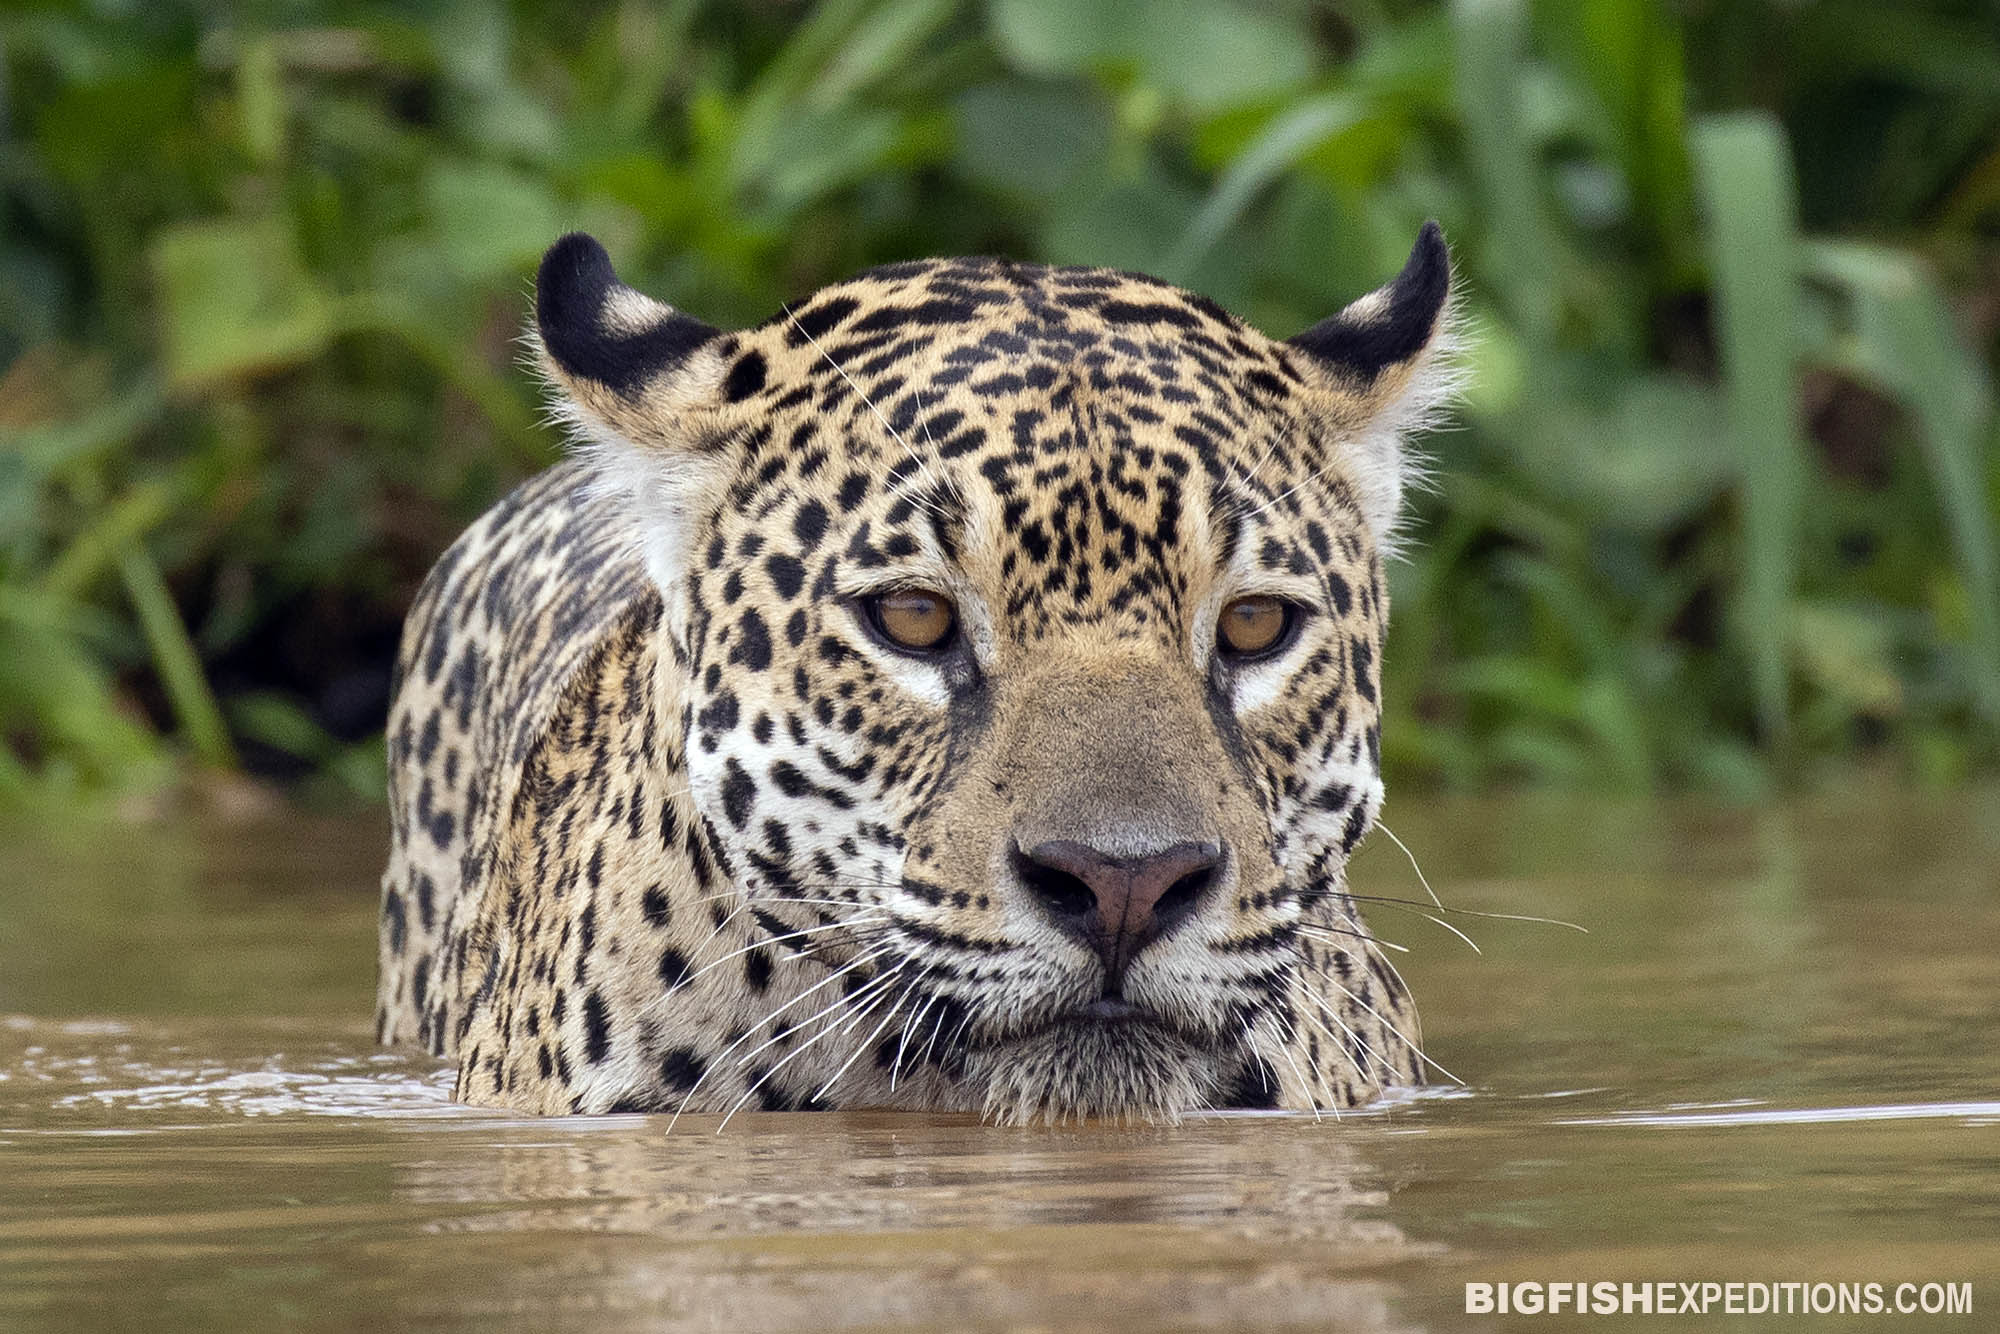 Jaguar photography tour in the Pantanal